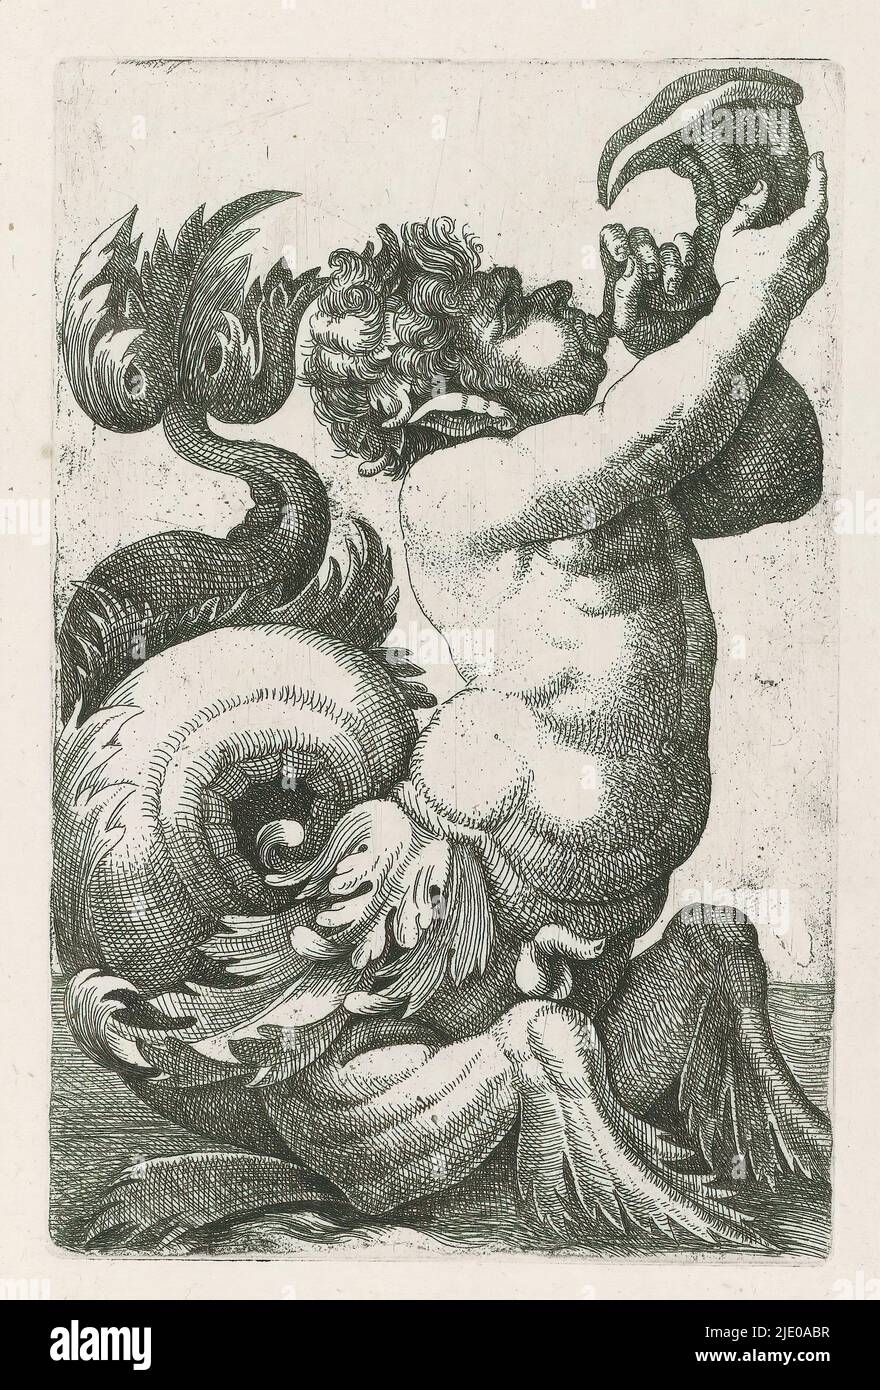 Triton soufflant sur la coquille, imprimeur: Giovanni Andrea Maglioli, Italie, c. 1580 - c. 1610, papier, gravure, hauteur 139 mm × largeur 90 mm Banque D'Images